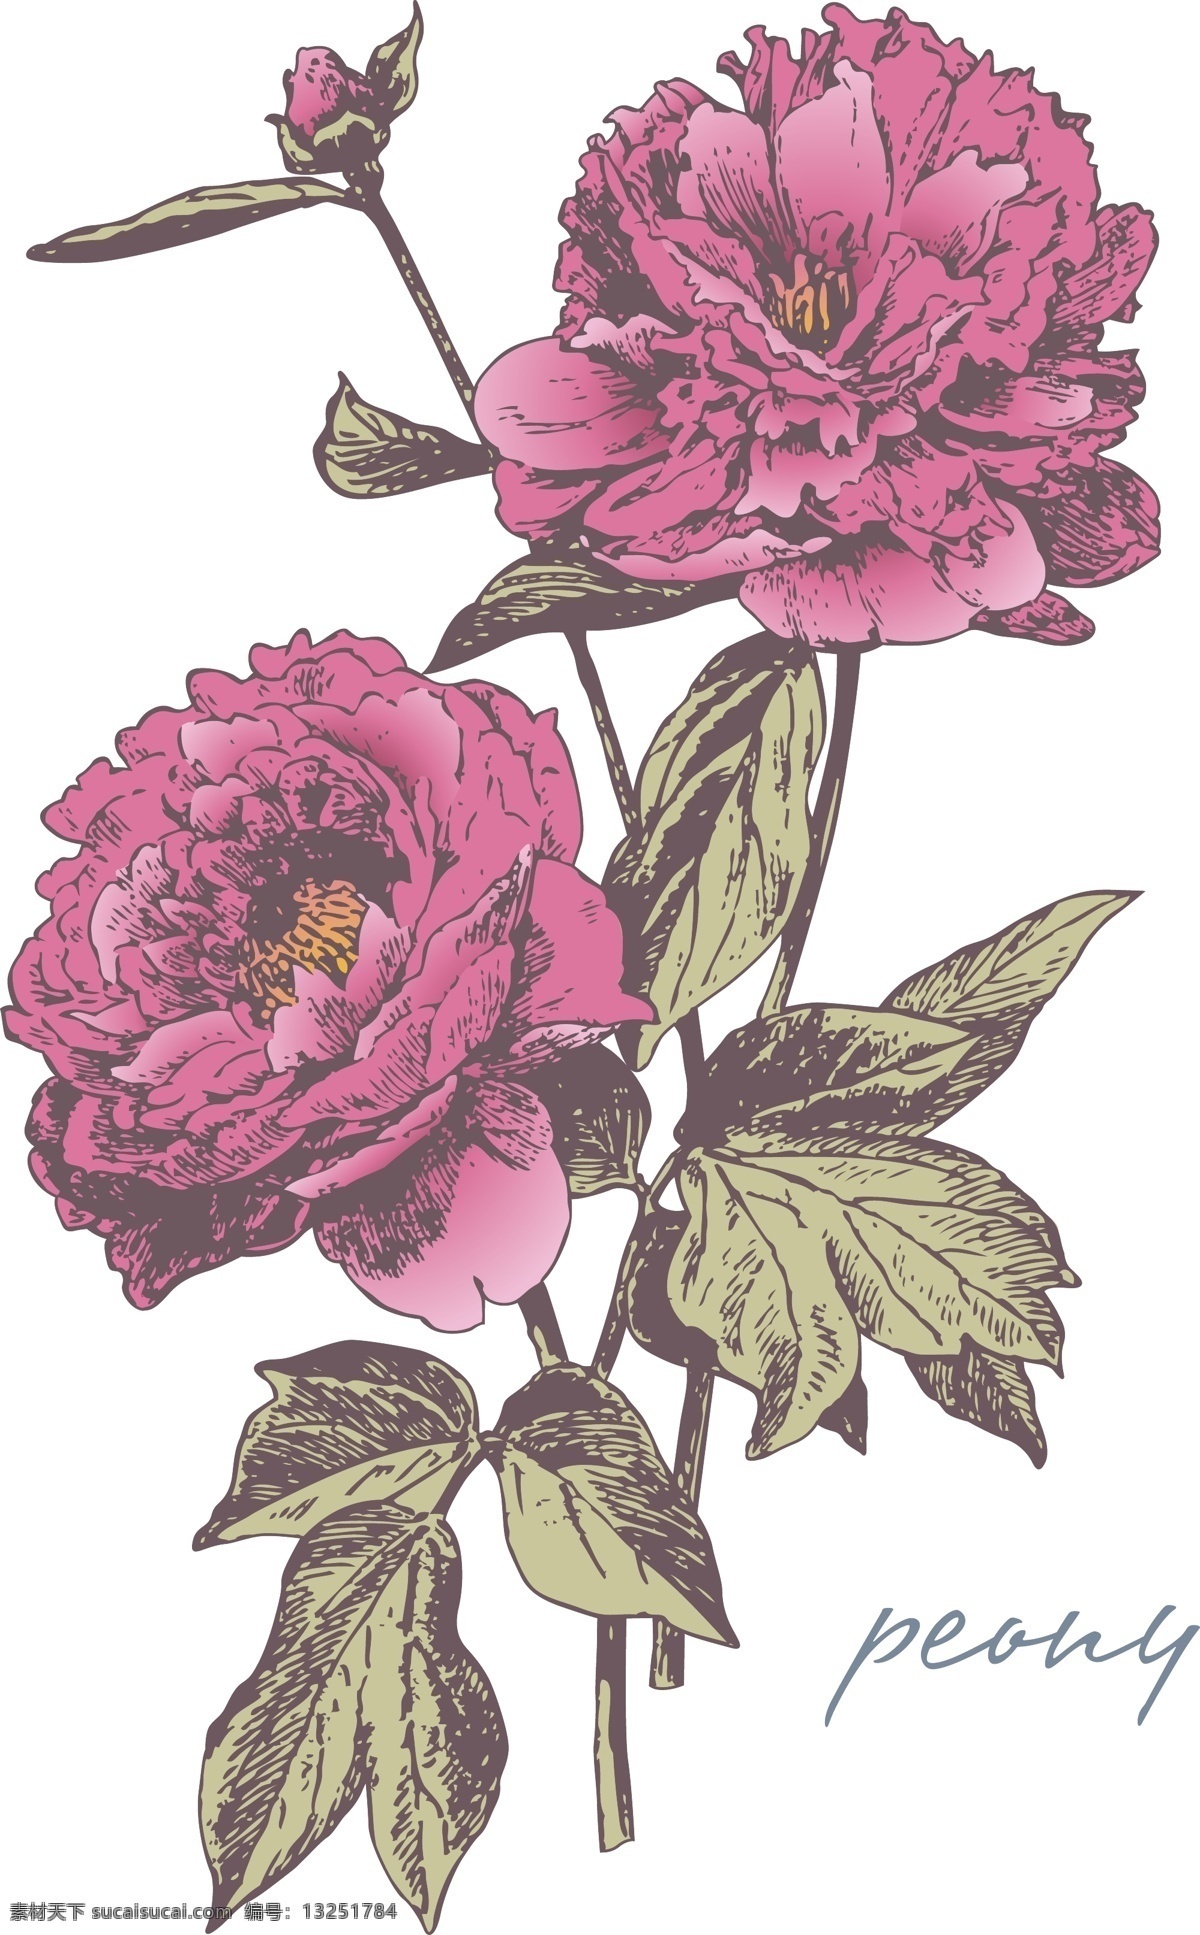 背景图片 花边素材 花卉图案 花纹素材 模板 素材元素 复古鲜花 植被图案 自然植被 矢量图 花纹花边